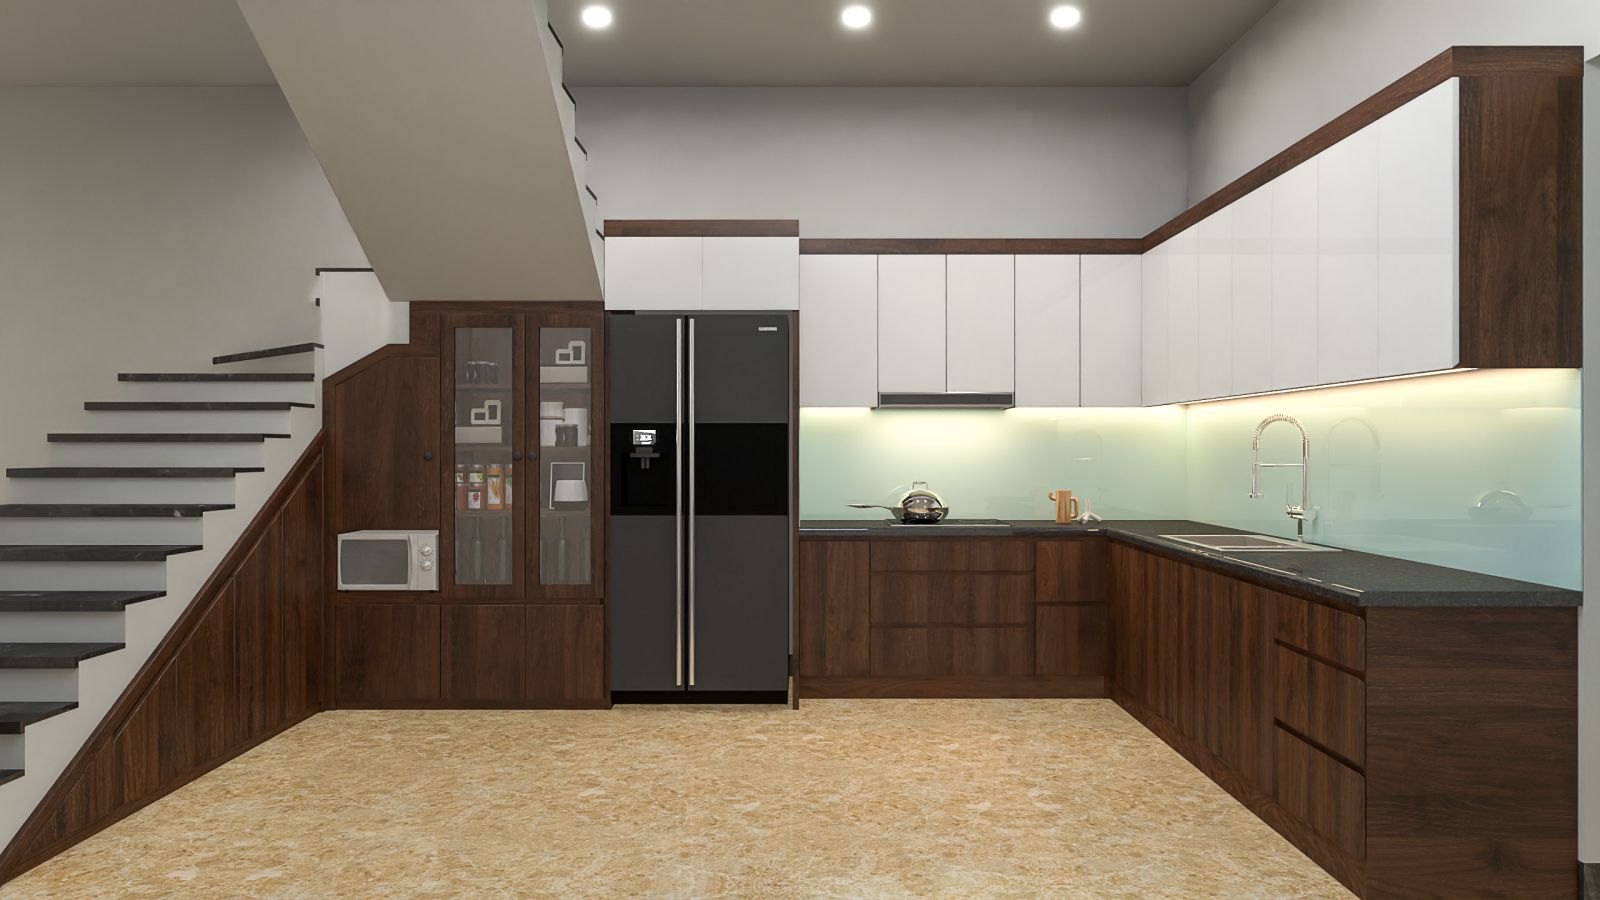 Mẫu tủ bếp kết hợp màu vân gỗ và màu đơn sắc tại nội thất hoàng anh ninh bình